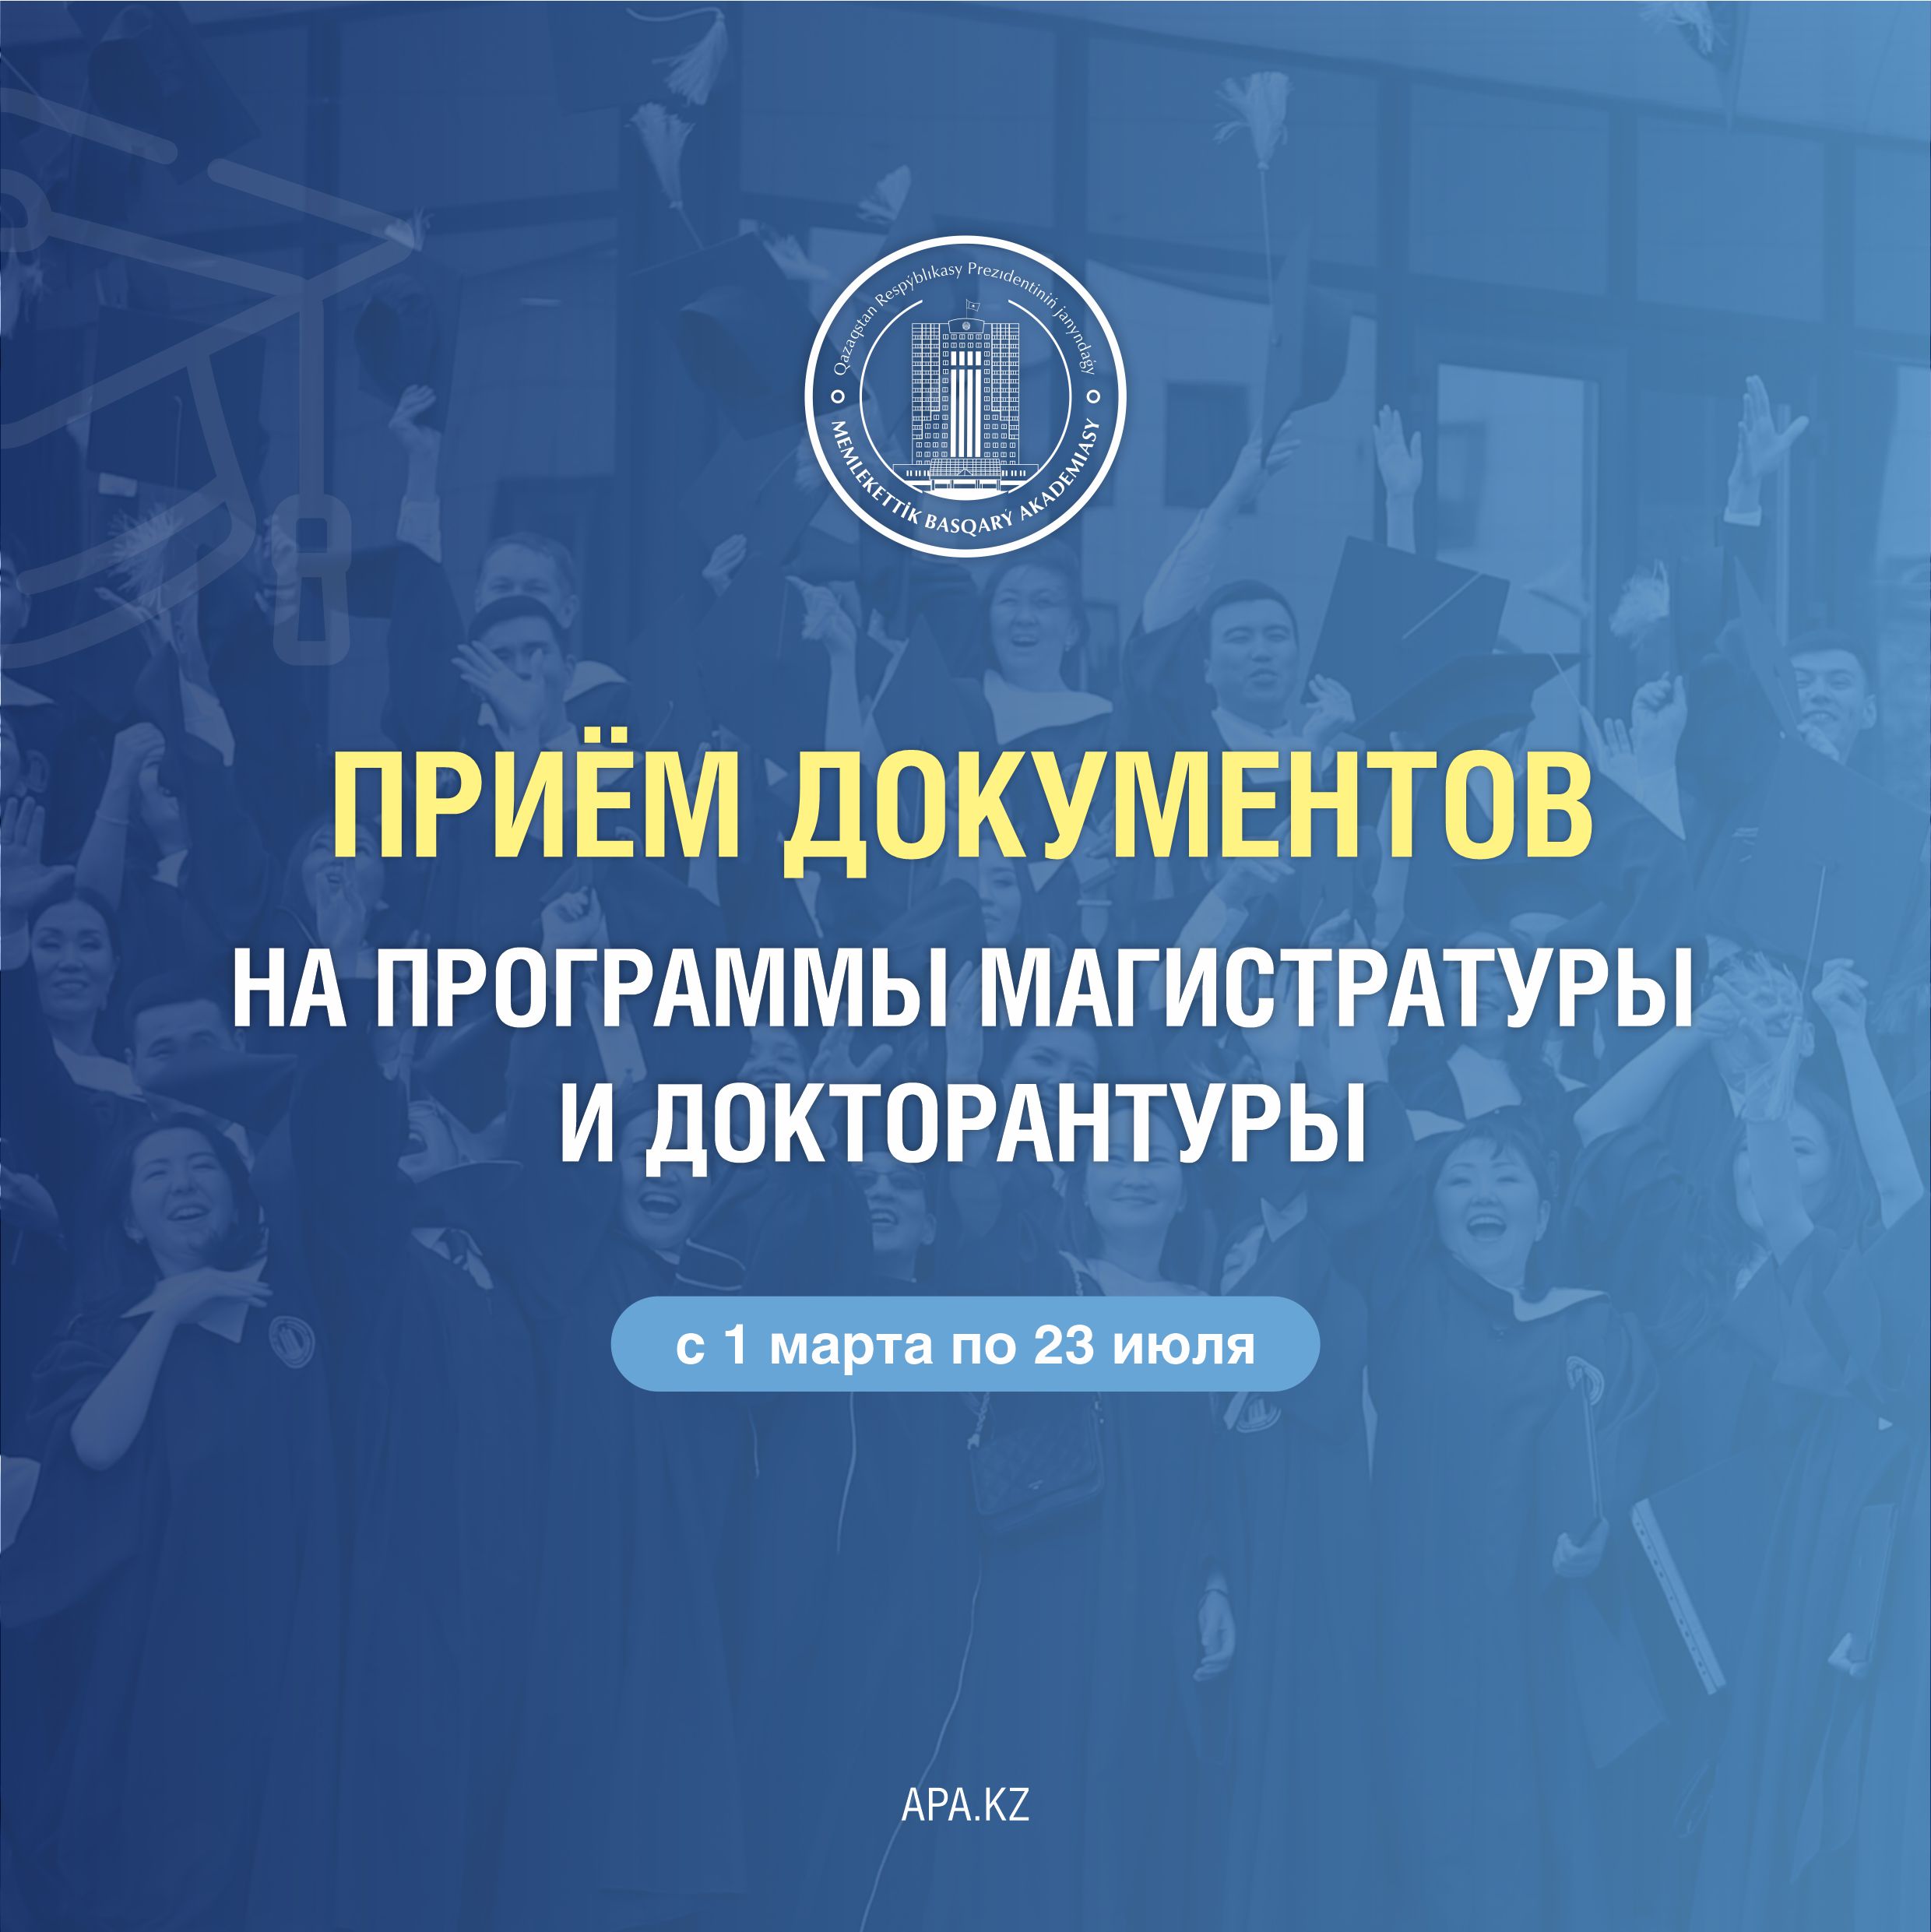 Академия государственного управления при Президенте Республики Казахстан осуществляет прием документов на поступление в МАГИСТРАТУРУ и ДОКТОРАНТУРУ